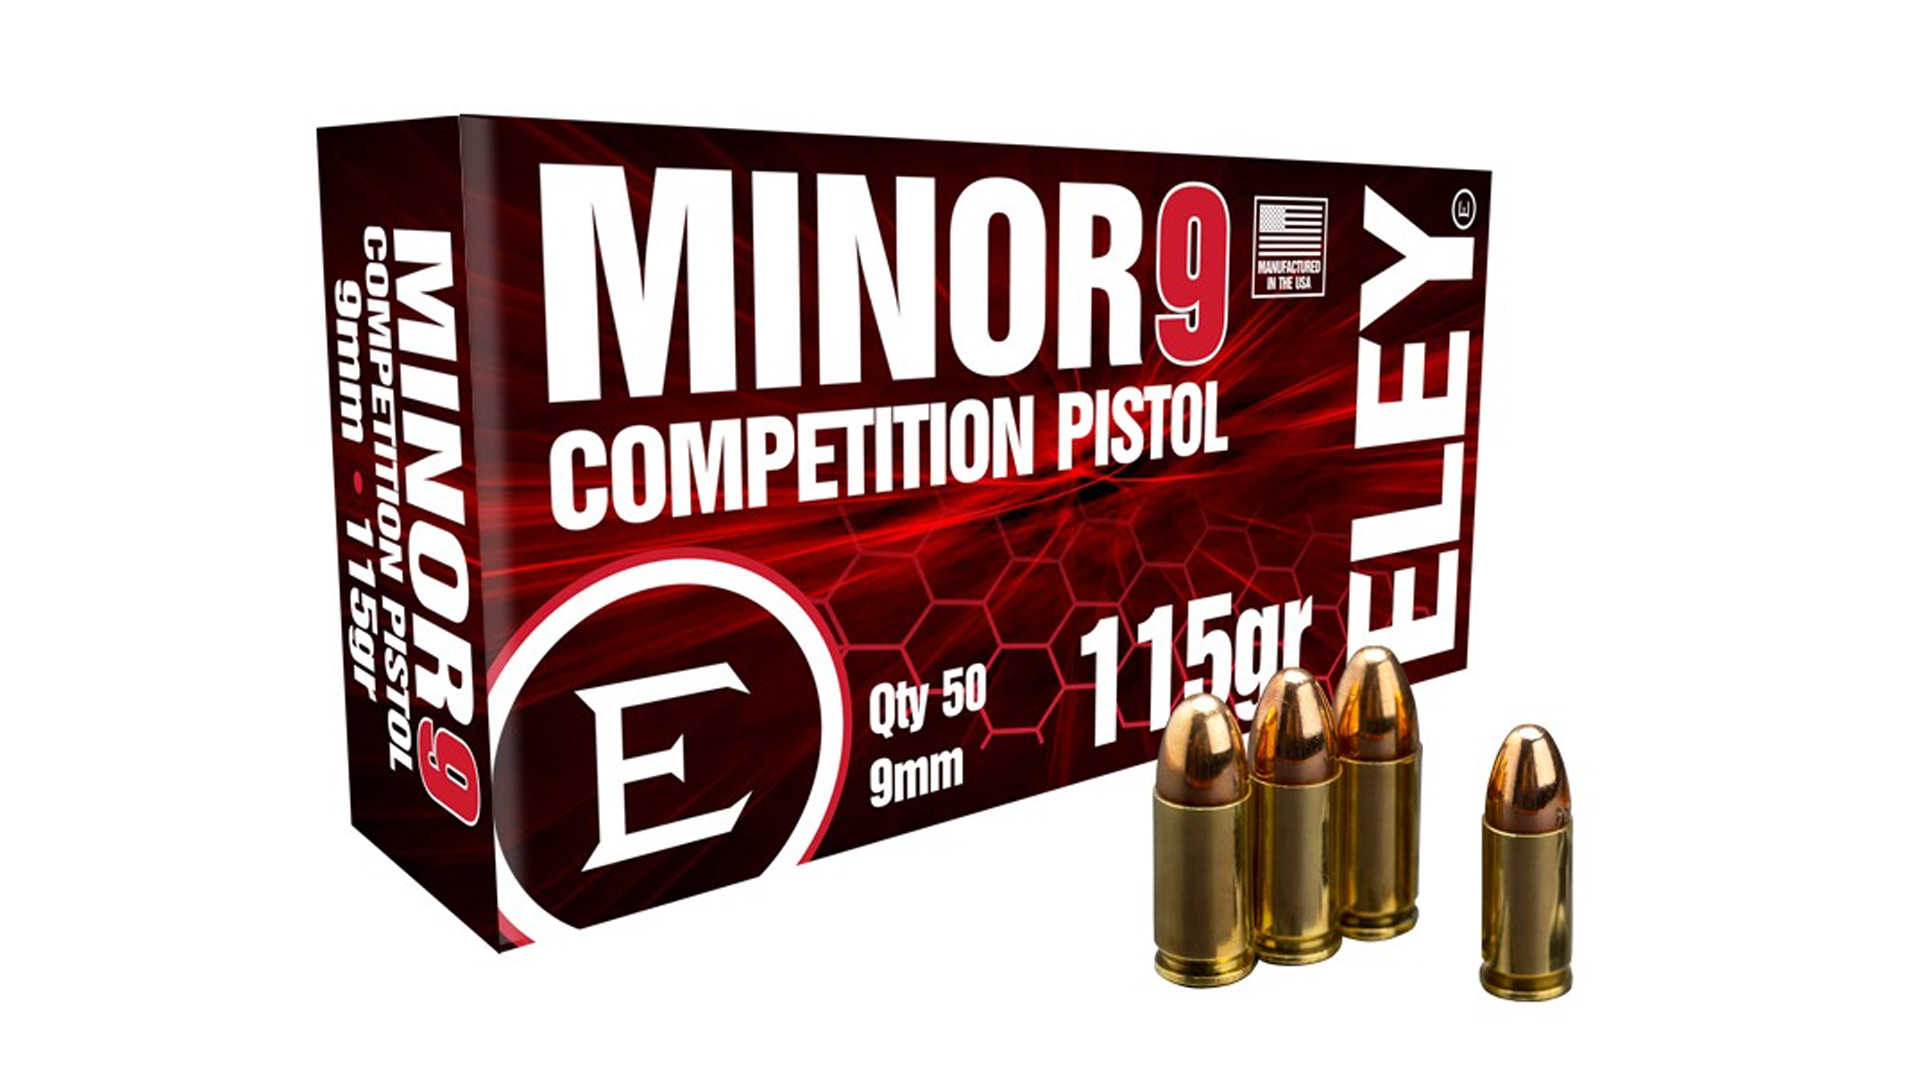 Eley 9 mm 115-grain pistol load for minor PF